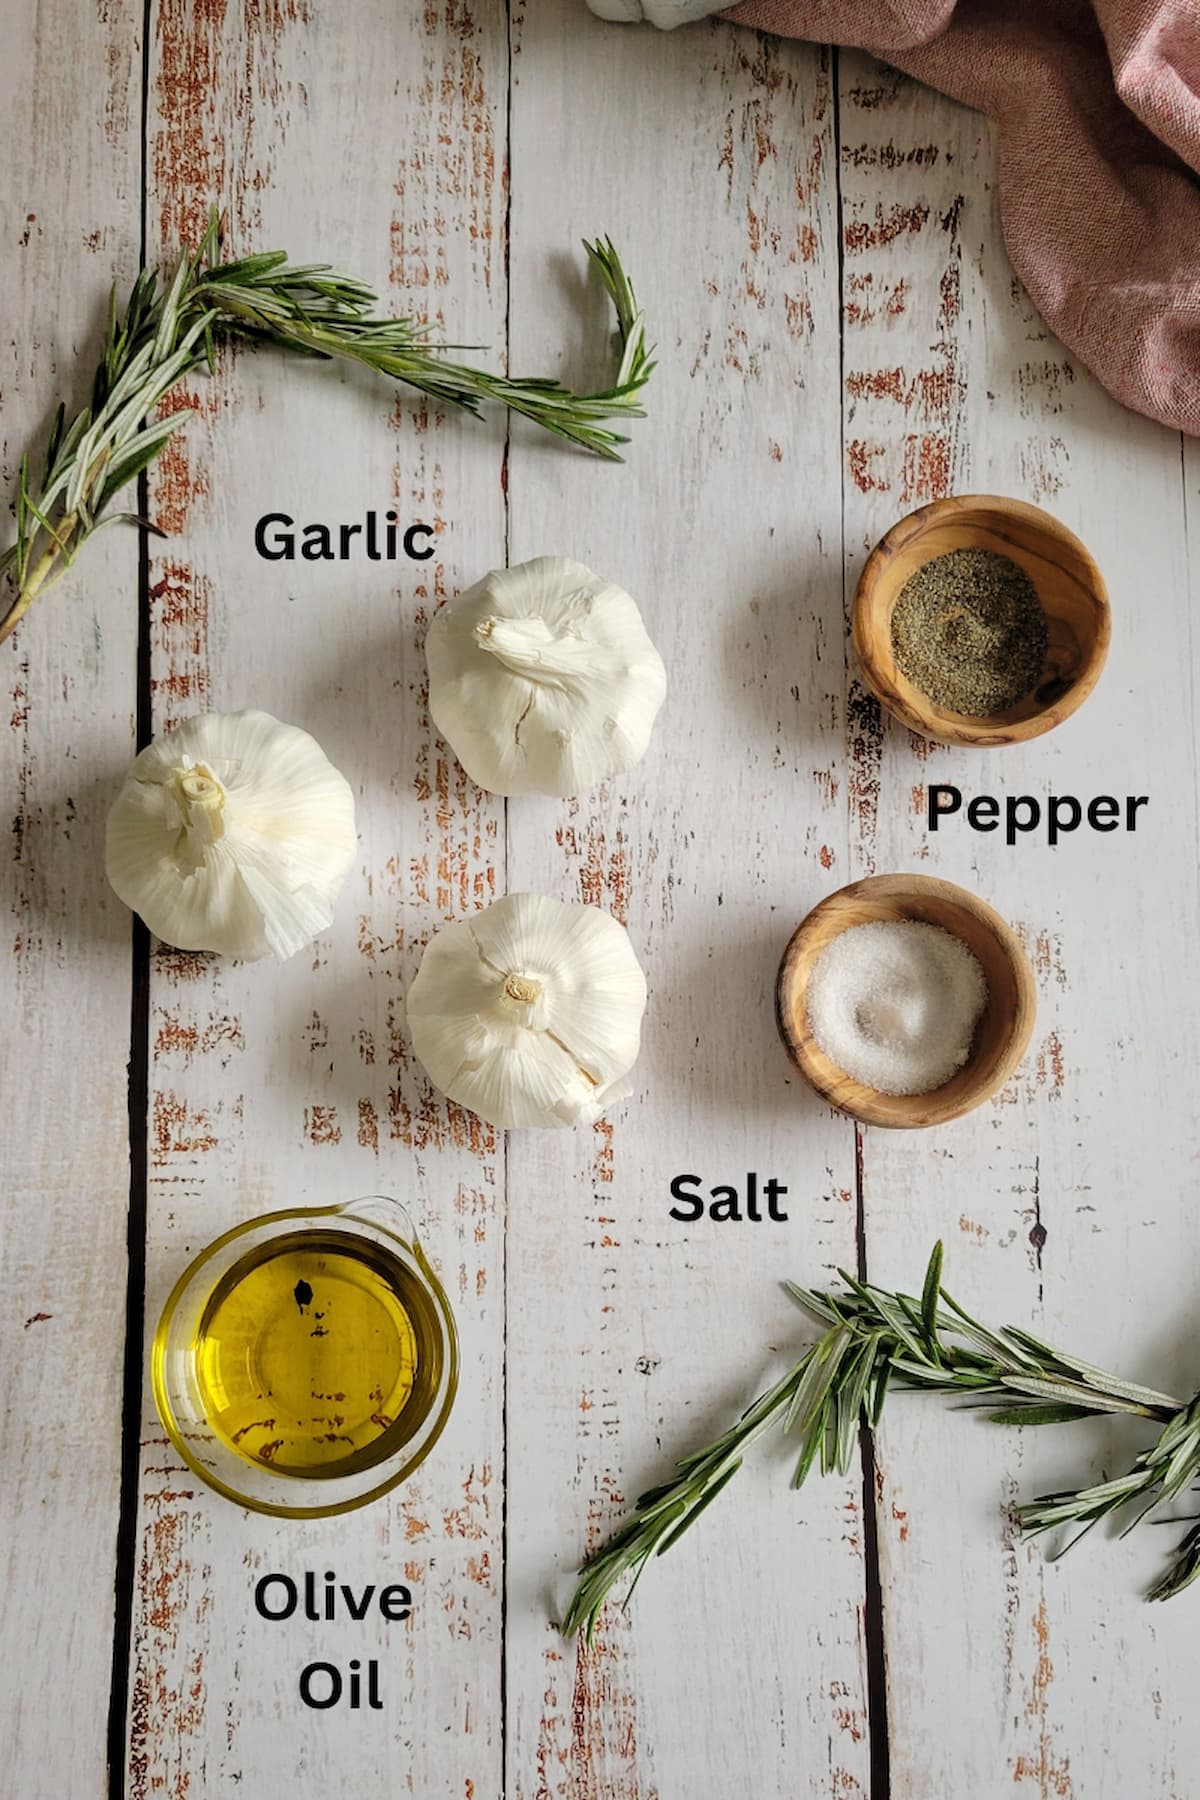 ingredients for roasted garlic in oven - garlic, salt, pepper, olive oil